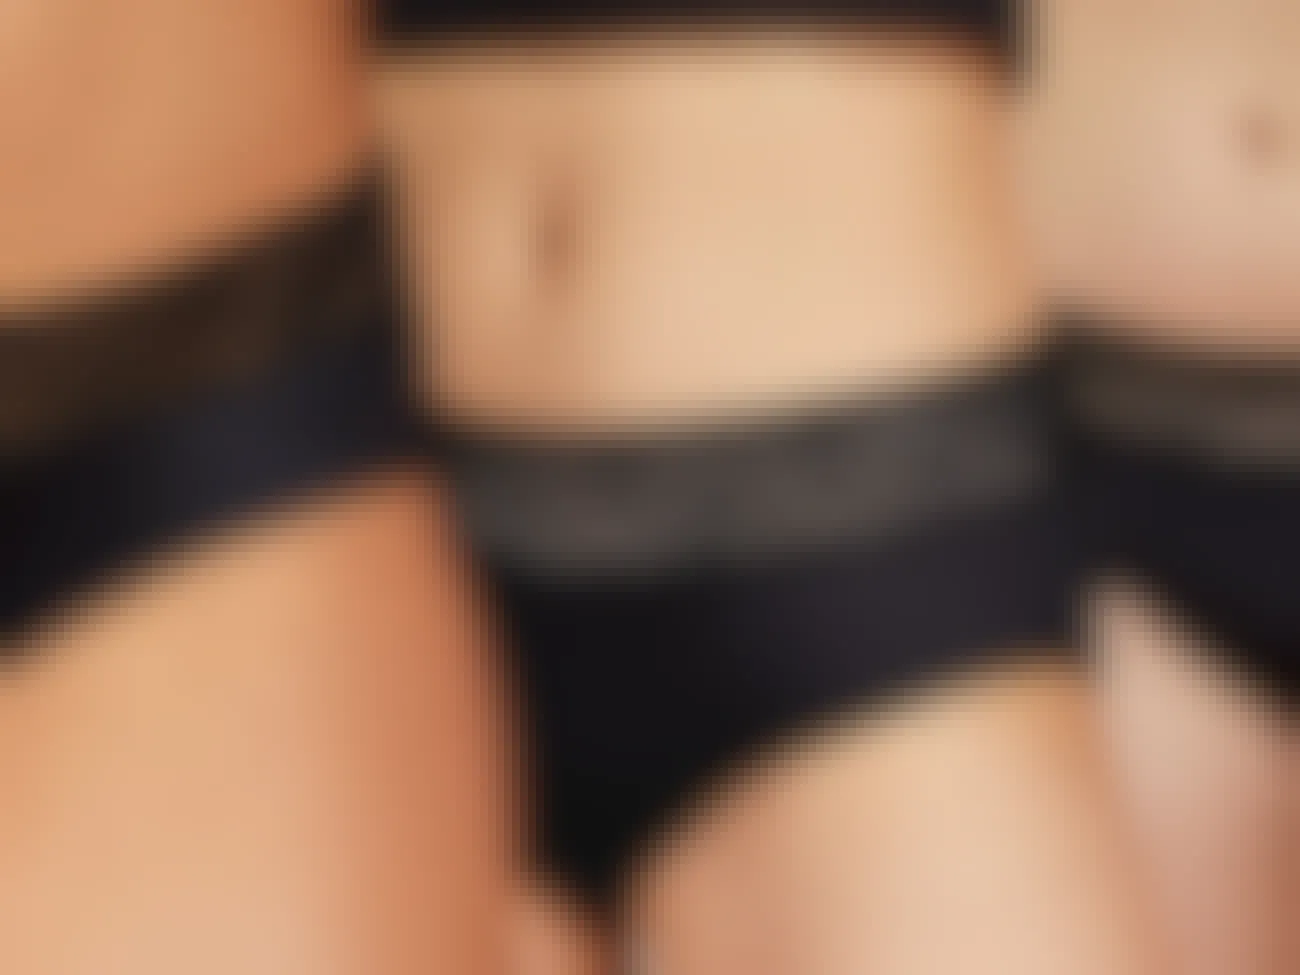 Models wearing Thinx period underwear